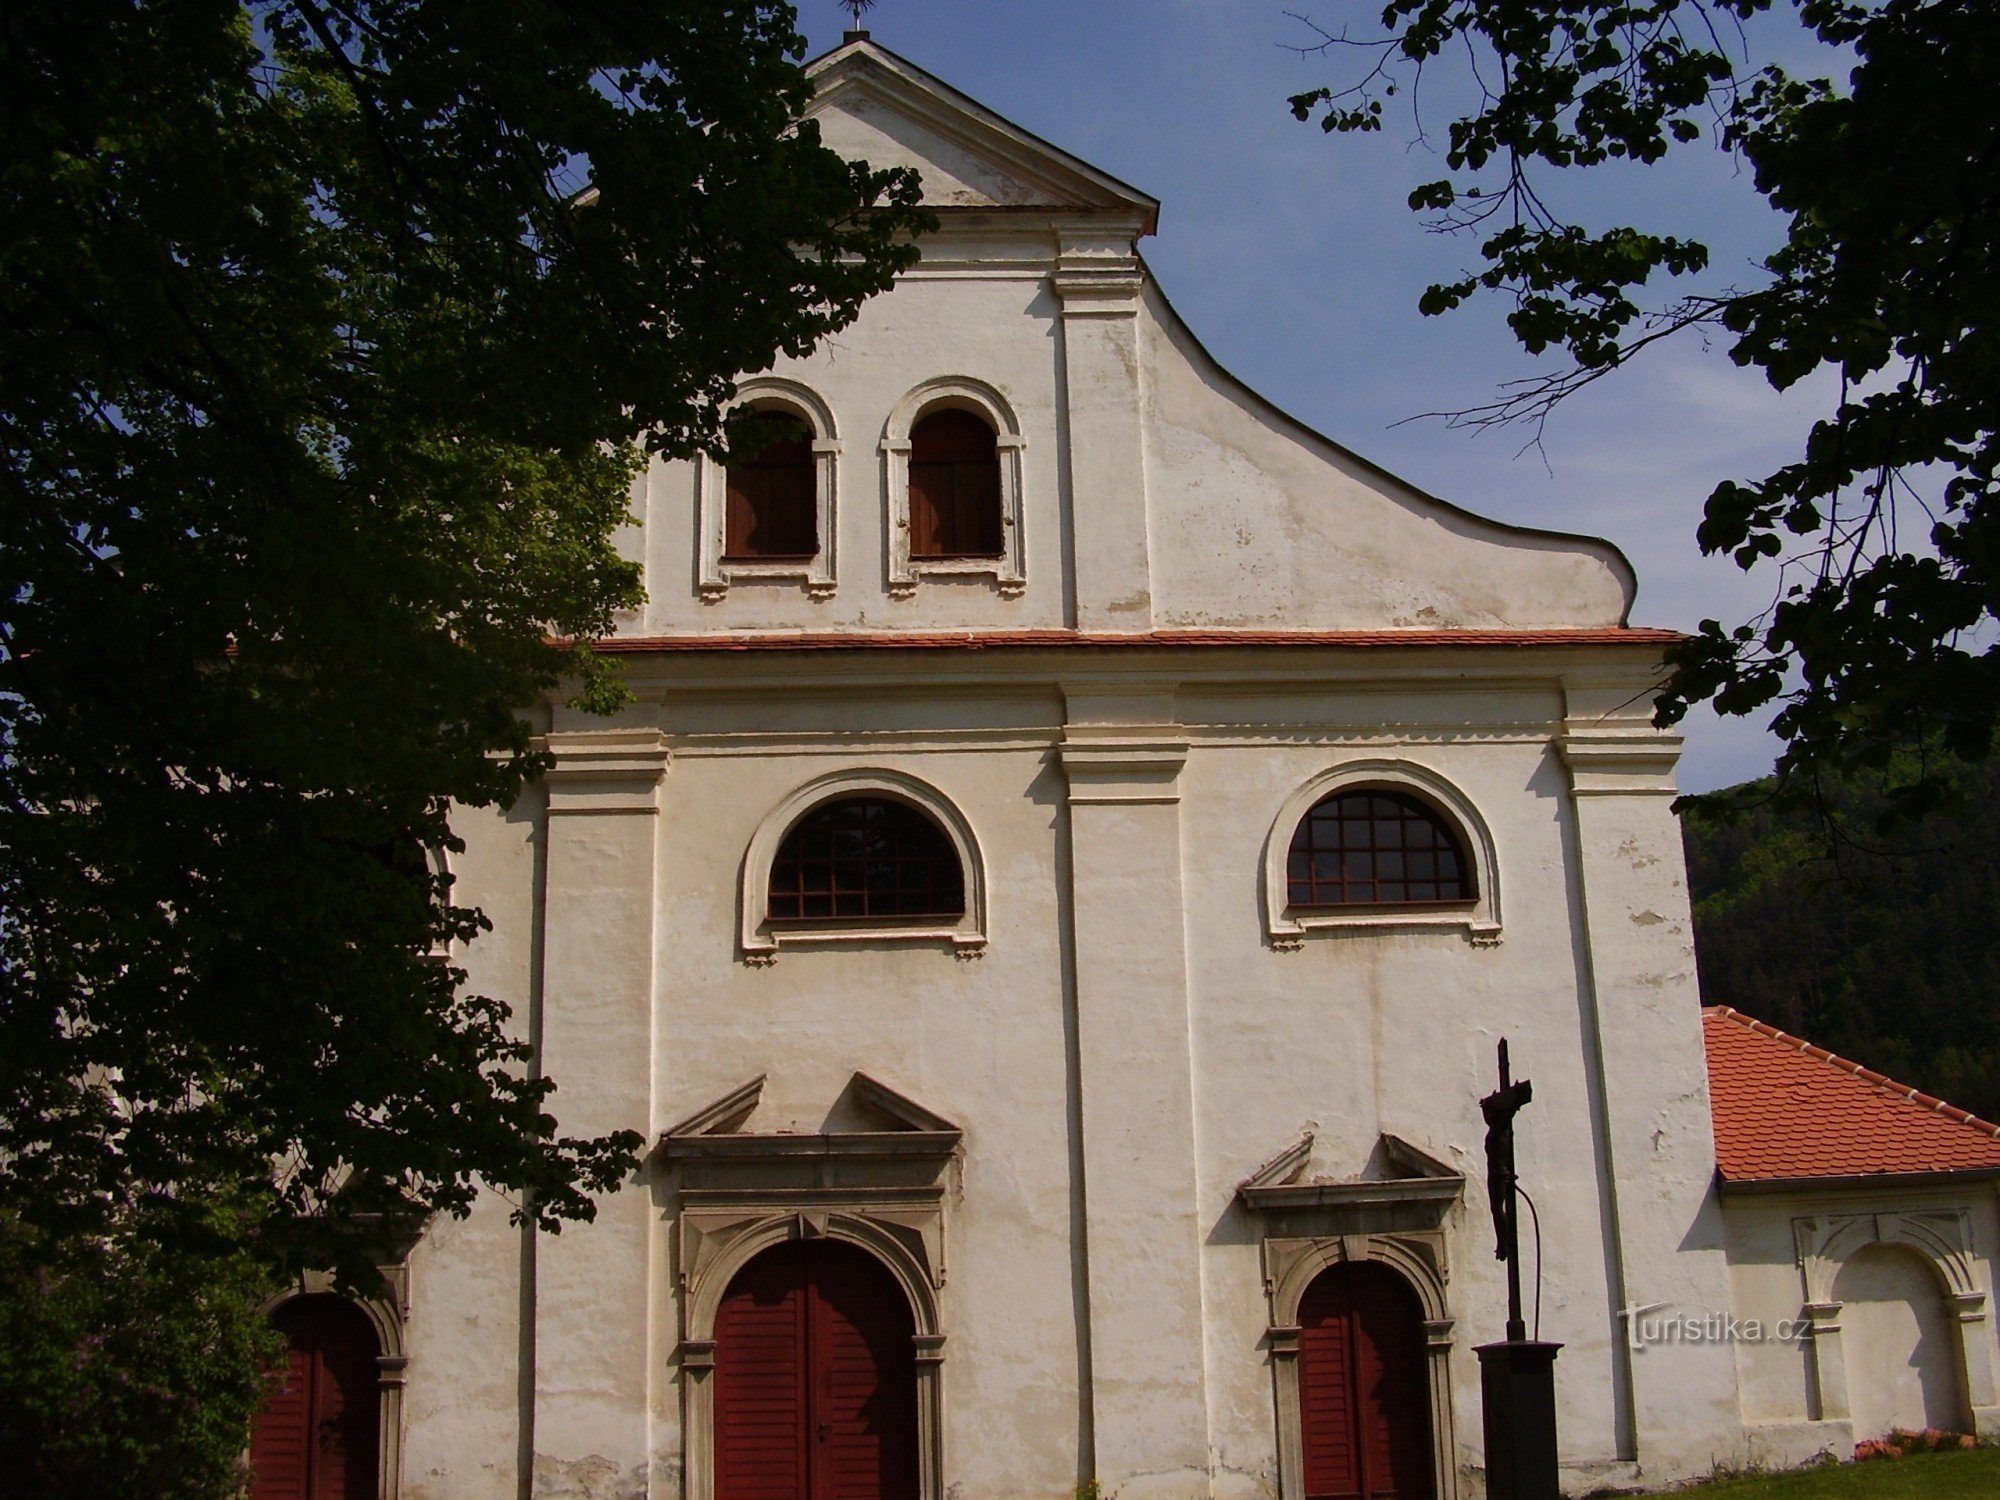 Church of the Assumption of the Virgin Mary in Černvír